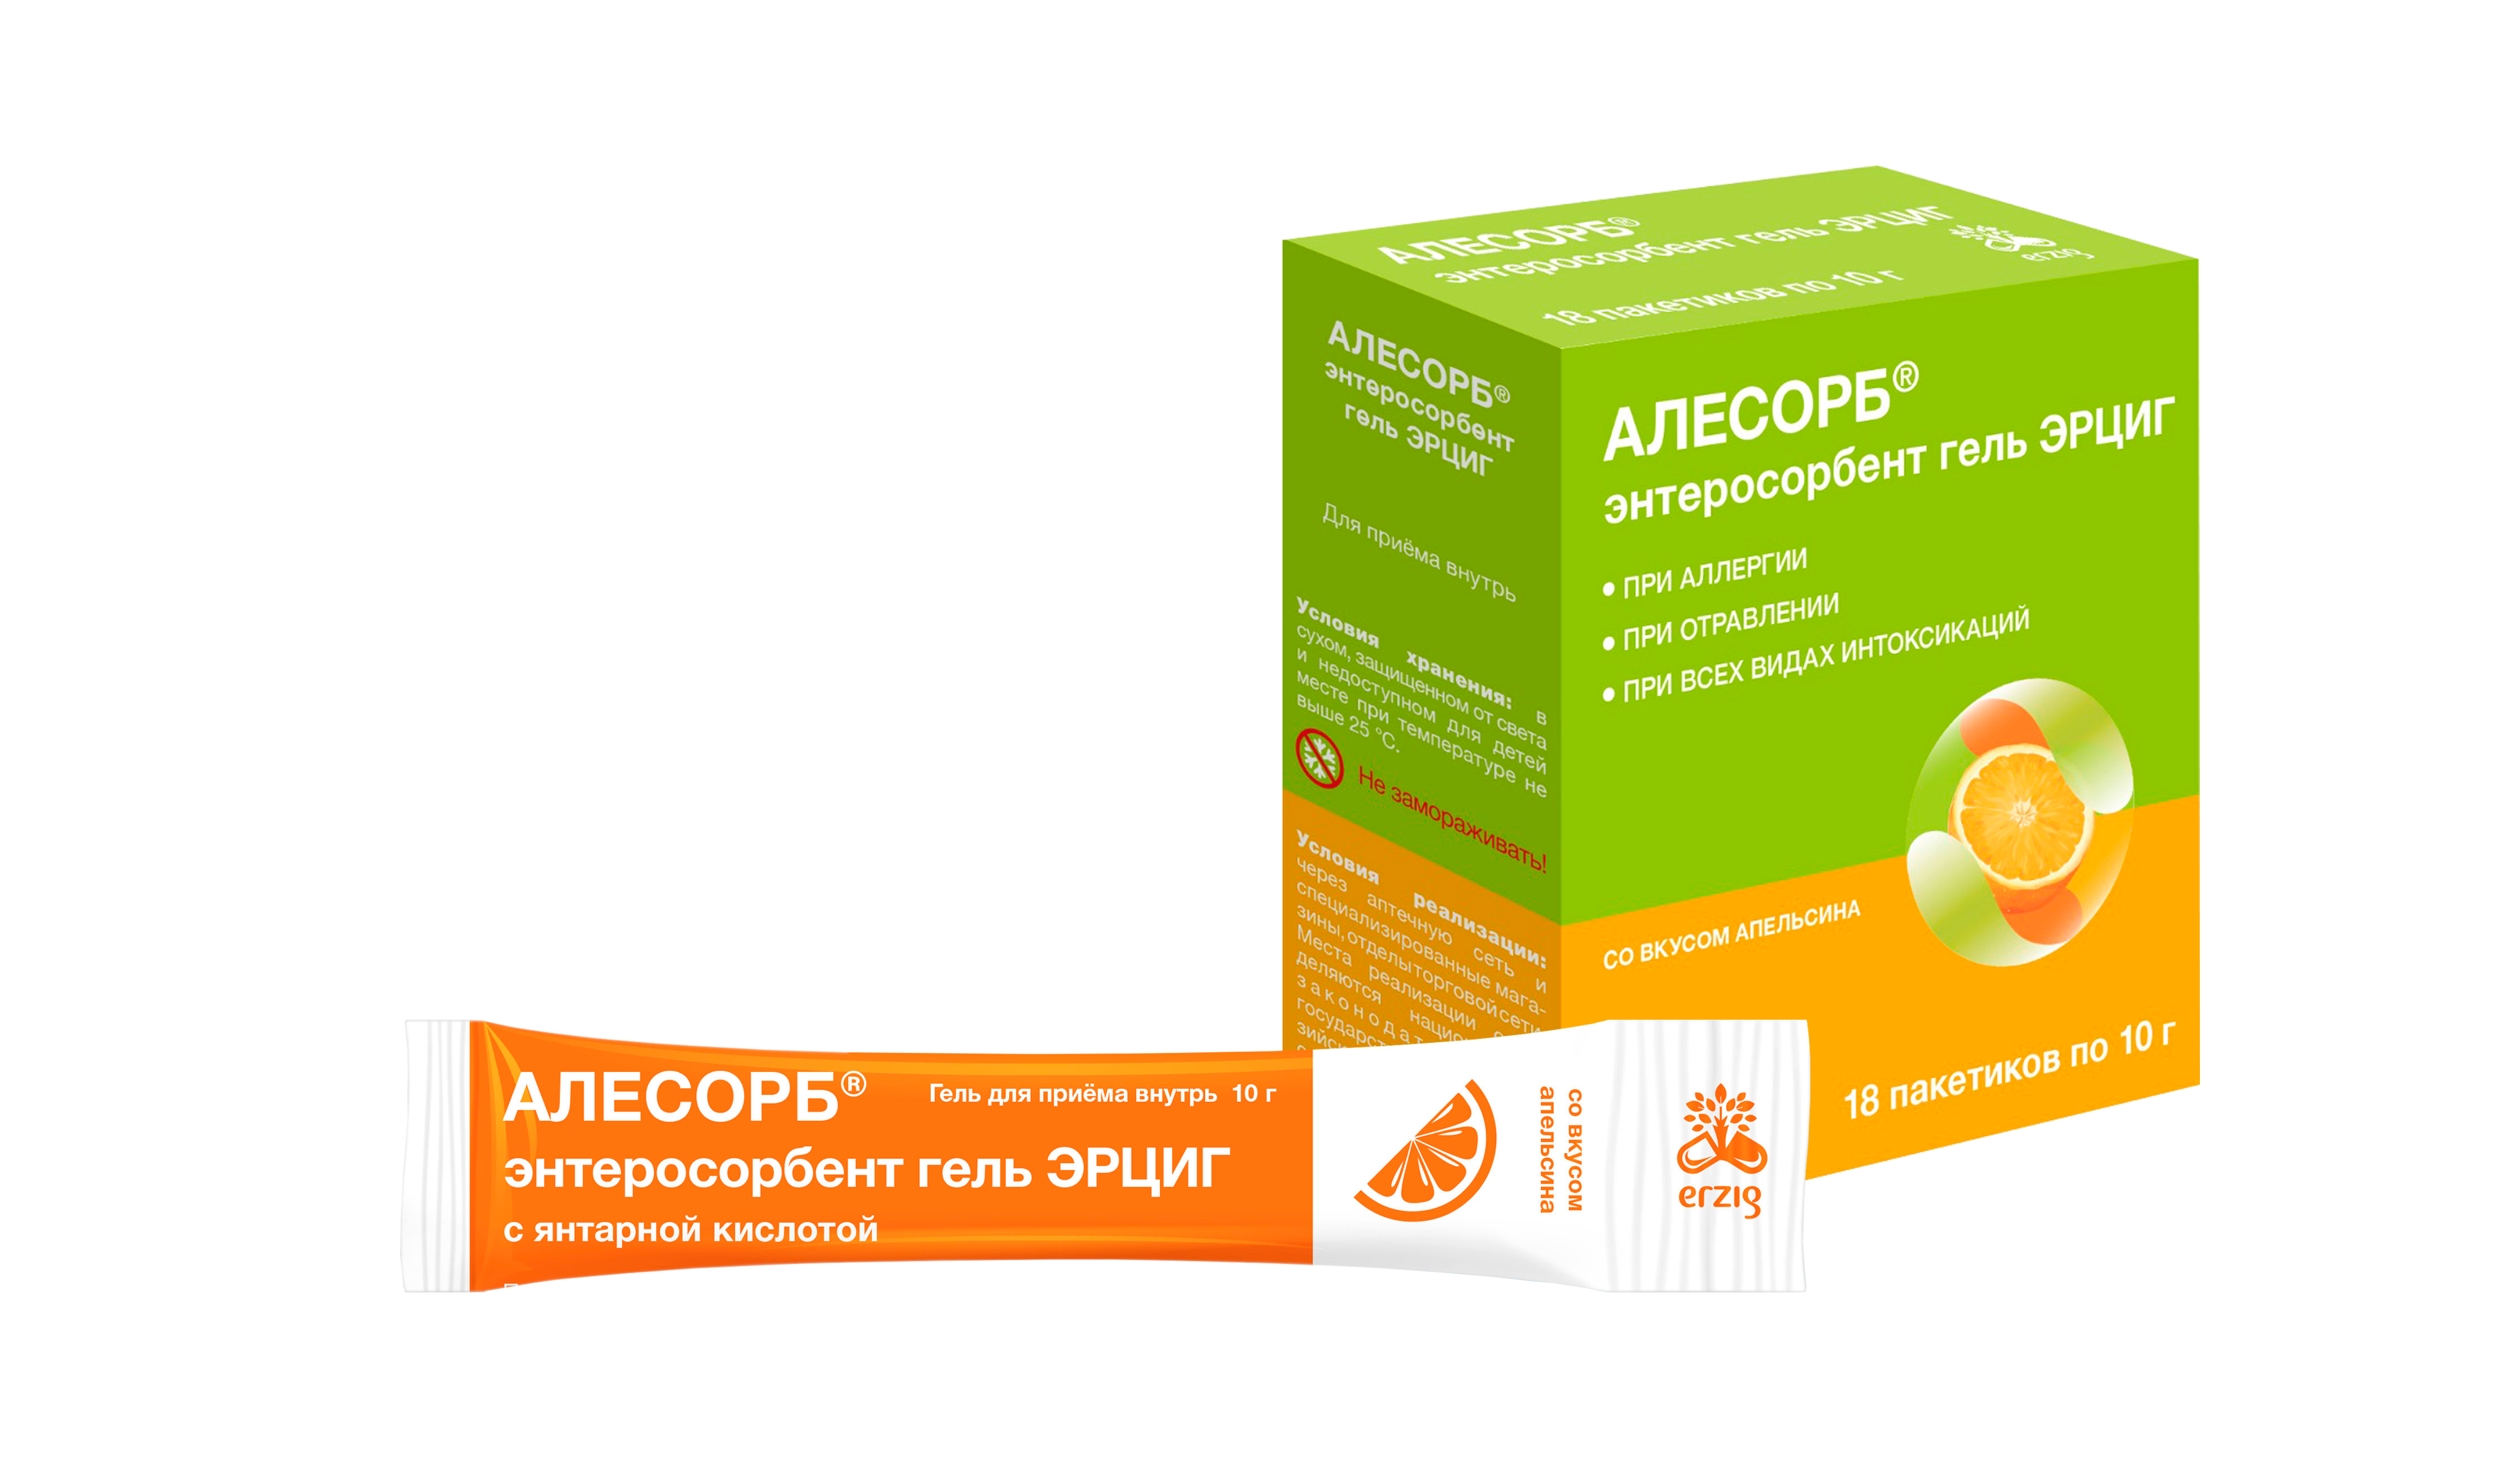 Алесорб, энтеросорбент гель Эрциг+ (апельсин), пакетики 10 г, 18 шт. алесорб энтеросорбент гель д приема внутрь б аромата 10г 18